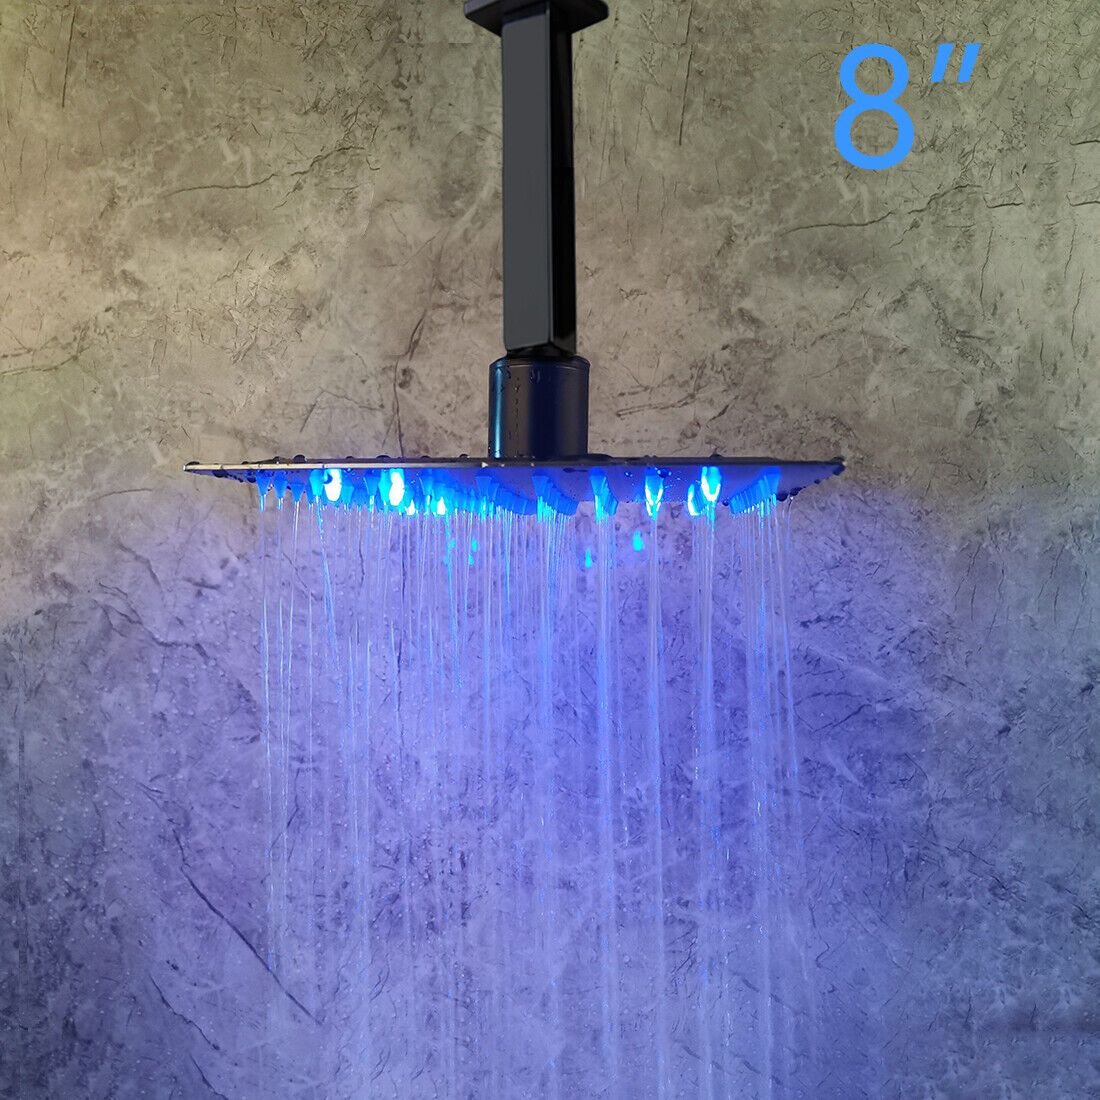 Black Bathroom Rain Shower Head Ceiling Mount Water Temperature LED Mixer Faucet WYPRZEDAŻ, GORĄCE